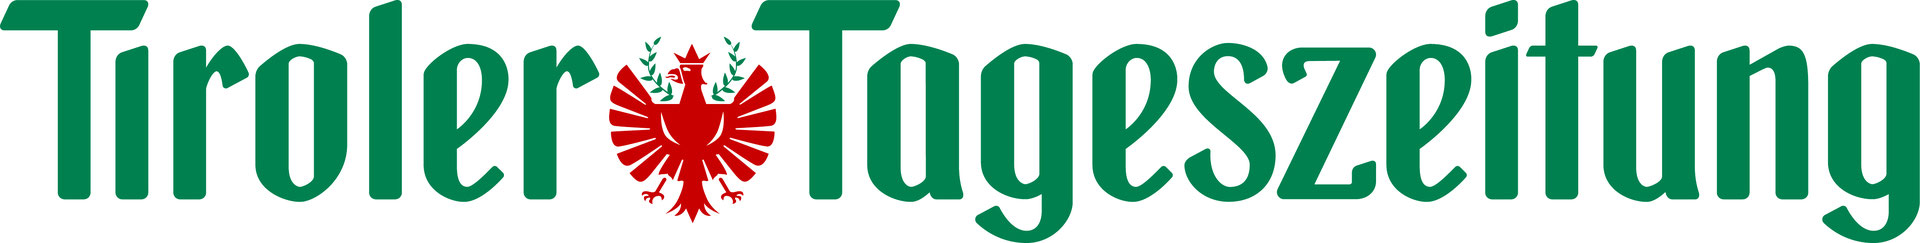 Logo der Tageszeitung "Tiroler Tageszeitung"